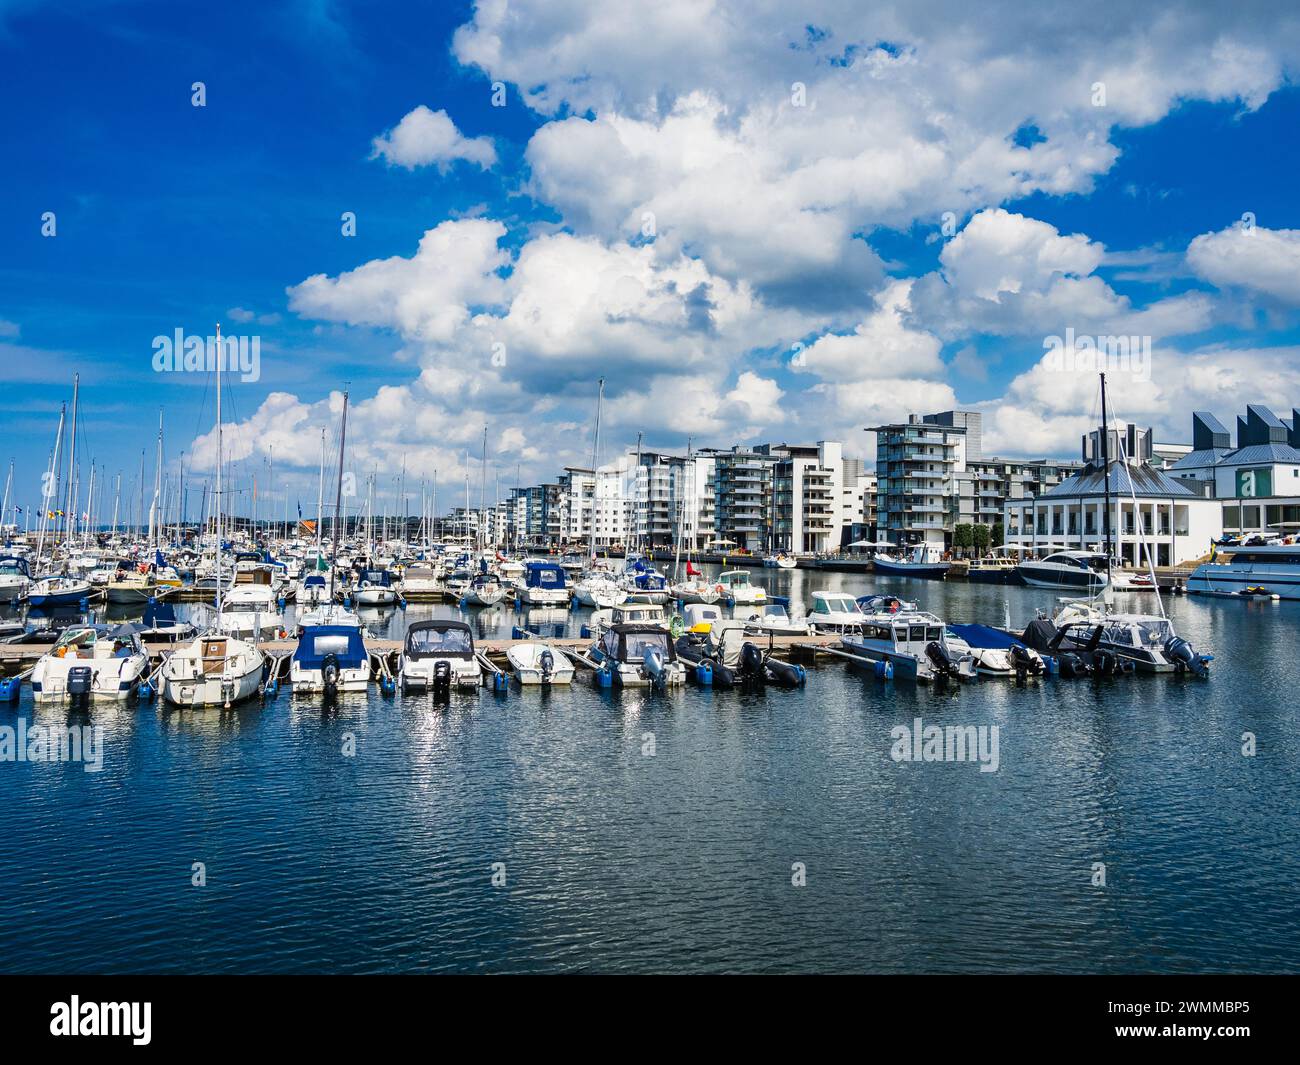 Le port animé de Helsingborg en Suède est animé par des rangées de bateaux amarrés par une belle journée d'été. L'eau tranquille reflète le ciel bleu clair Banque D'Images